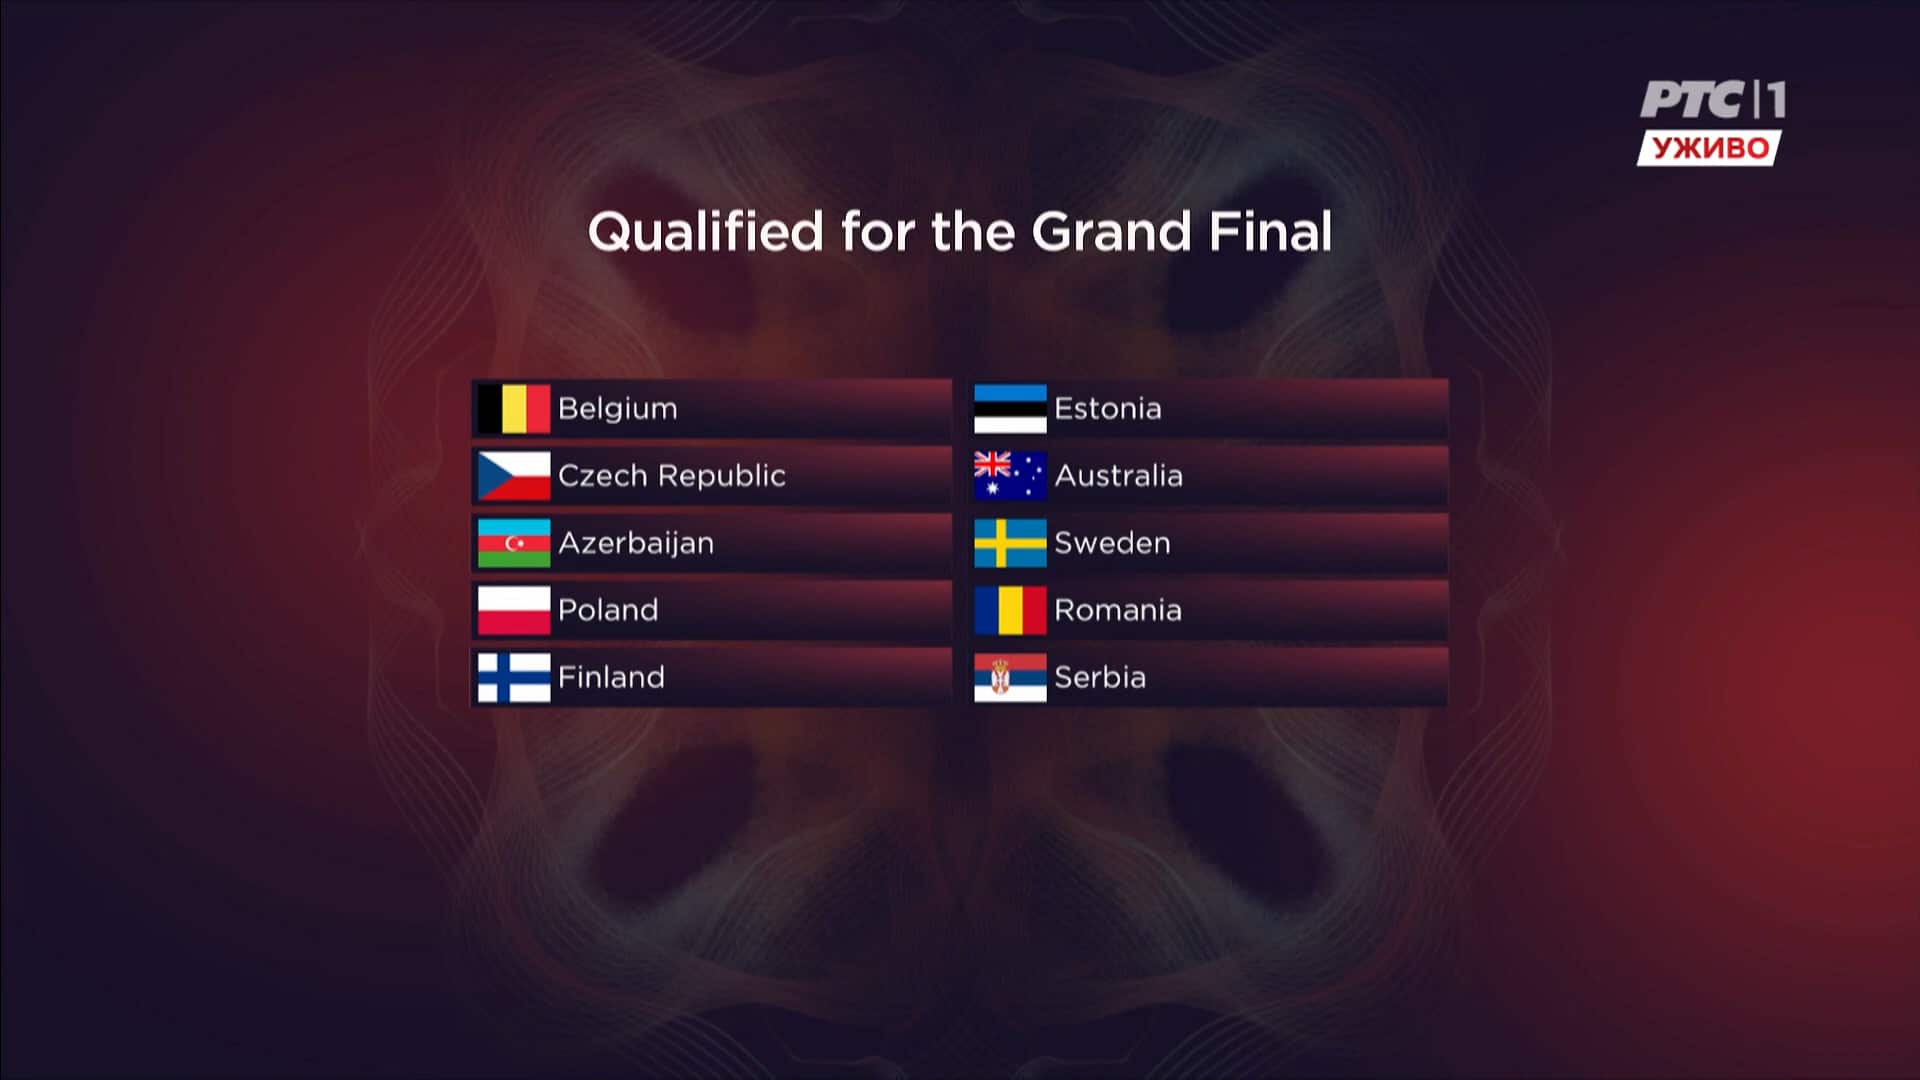 Konstrakta prošla u finale Evrovizije: Proglašeno drugih deset finalista 2